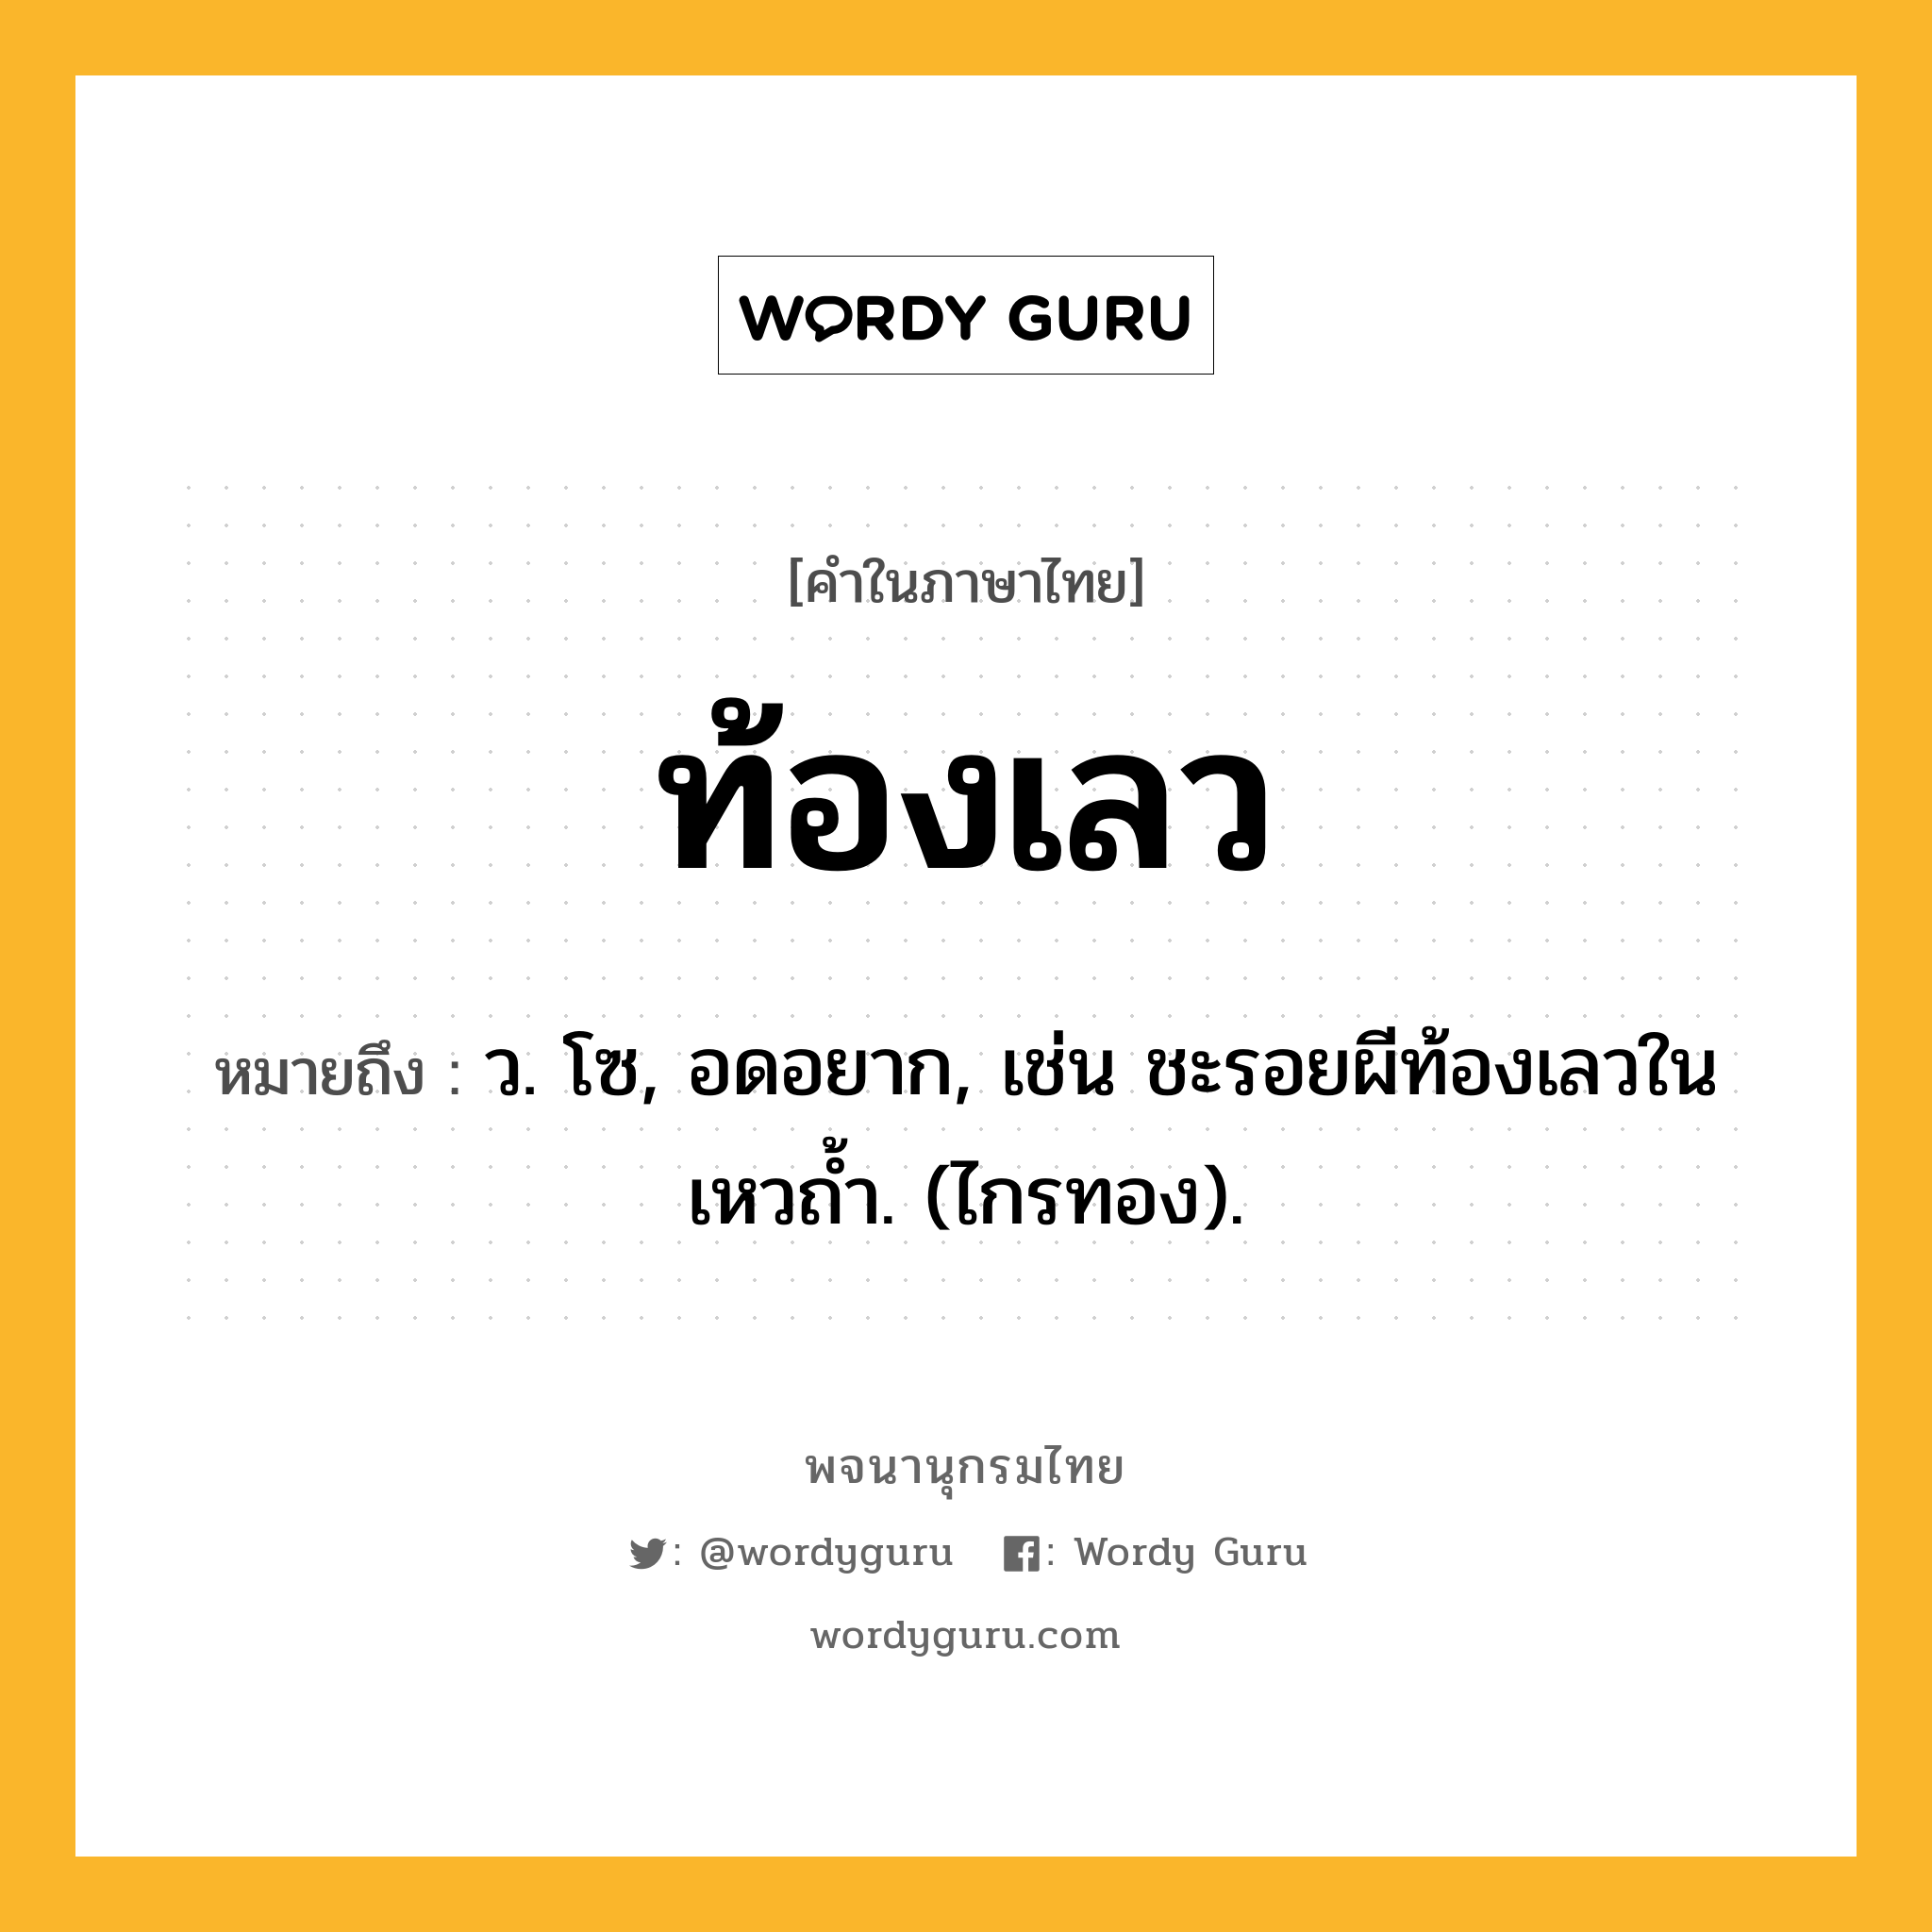 ท้องเลว ความหมาย หมายถึงอะไร?, คำในภาษาไทย ท้องเลว หมายถึง ว. โซ, อดอยาก, เช่น ชะรอยผีท้องเลวในเหวถํ้า. (ไกรทอง).